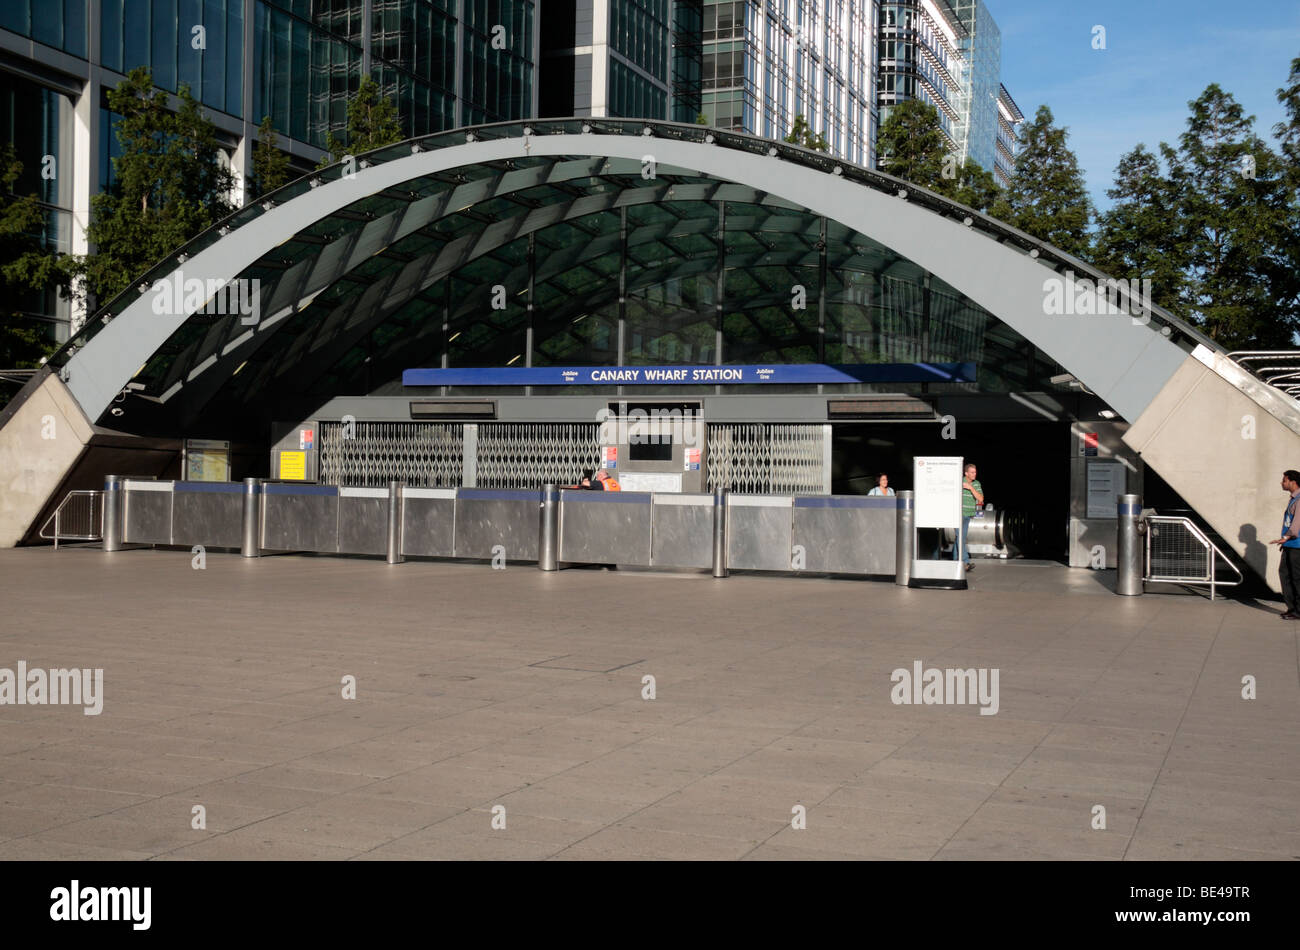 L'entrée de la station de métro Canary Wharf, dans les Docklands de Londres, Royaume-Uni. Banque D'Images